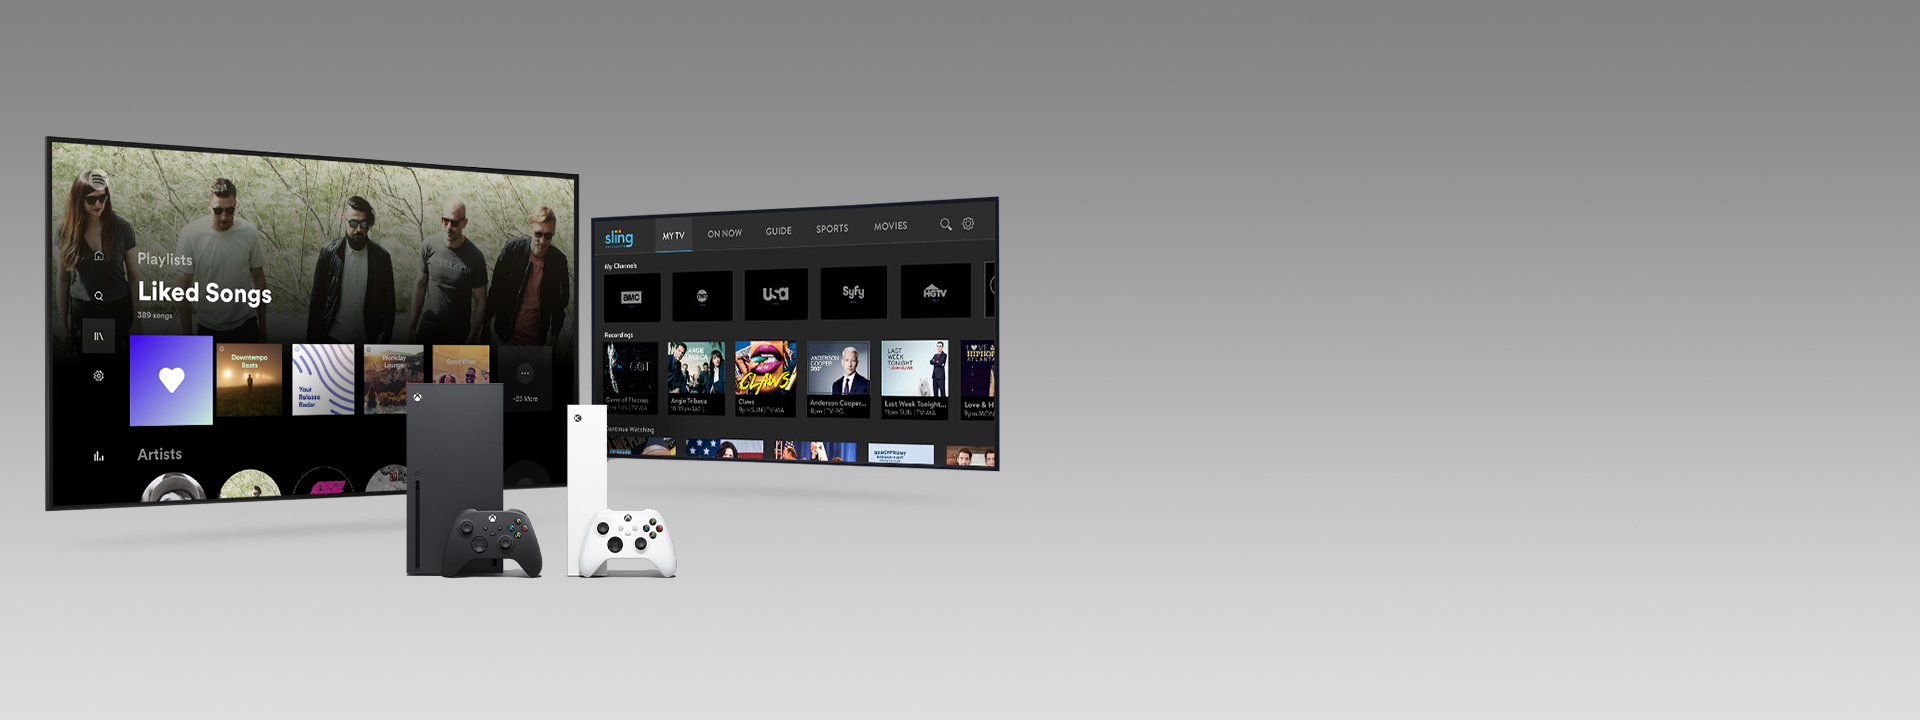 Une Xbox Series X et une Series S avec des manettes à l’avant de deux écrans de télévision affichant l’interface utilisateur pour les applications Xbox.